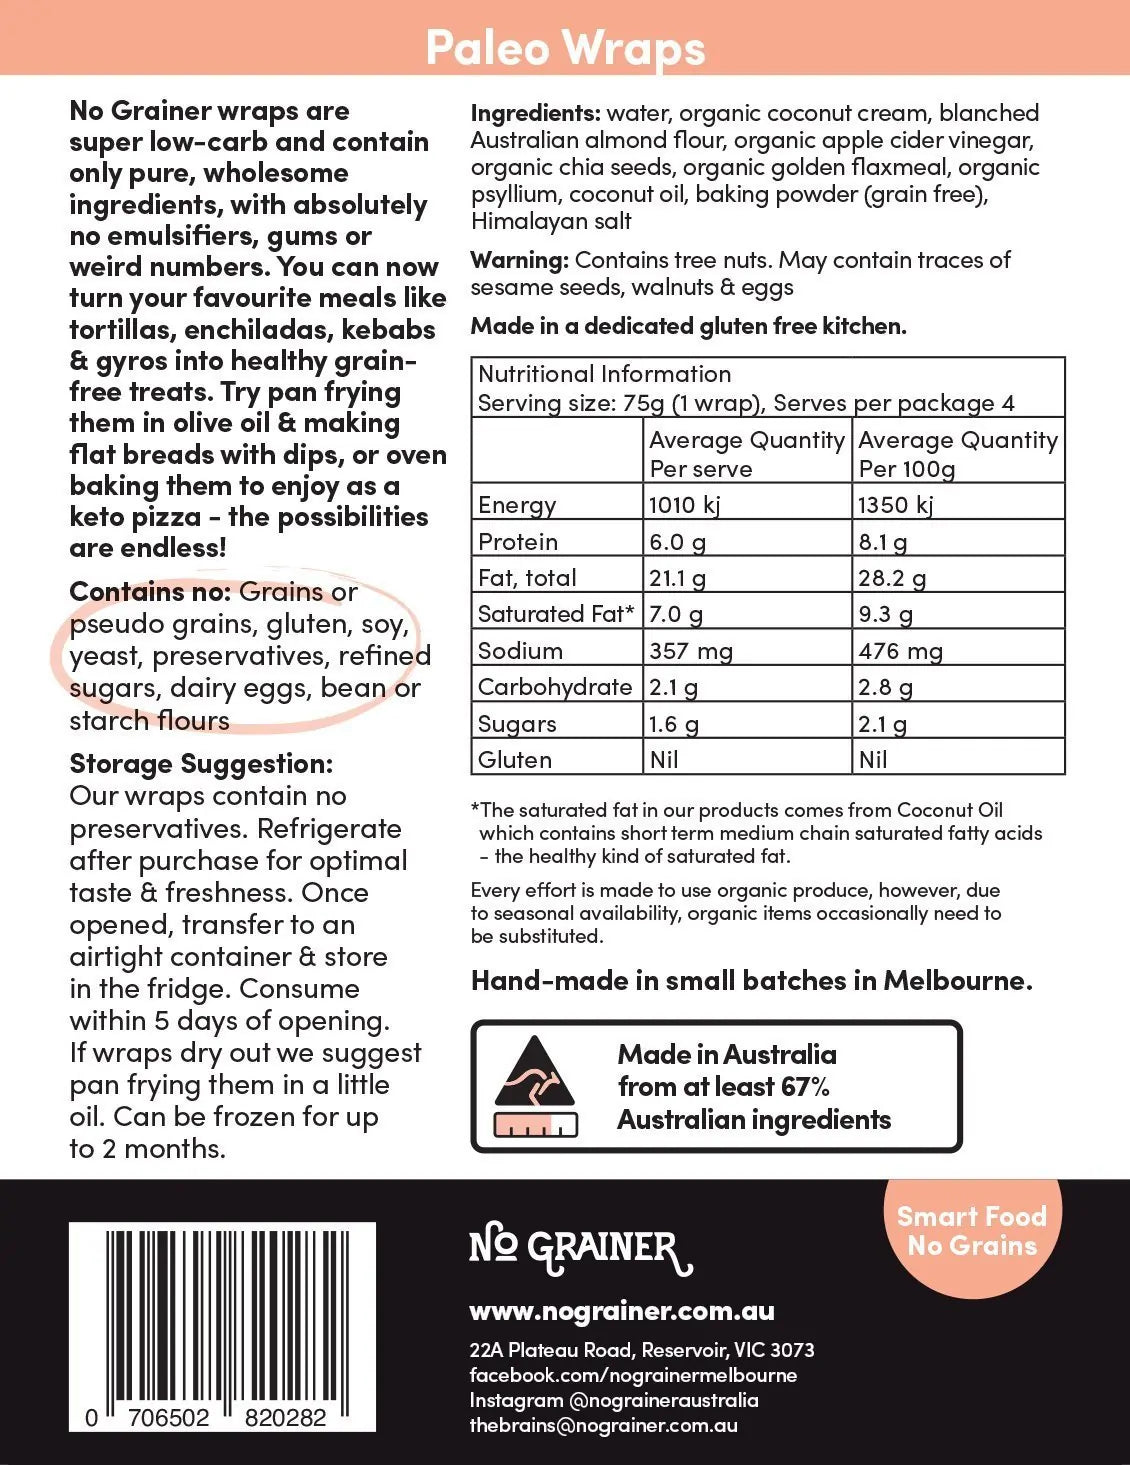 No Grainer Paleo Wraps 400g, Vegan, Gluten-Free & Grain Free Contains 4 Wraps